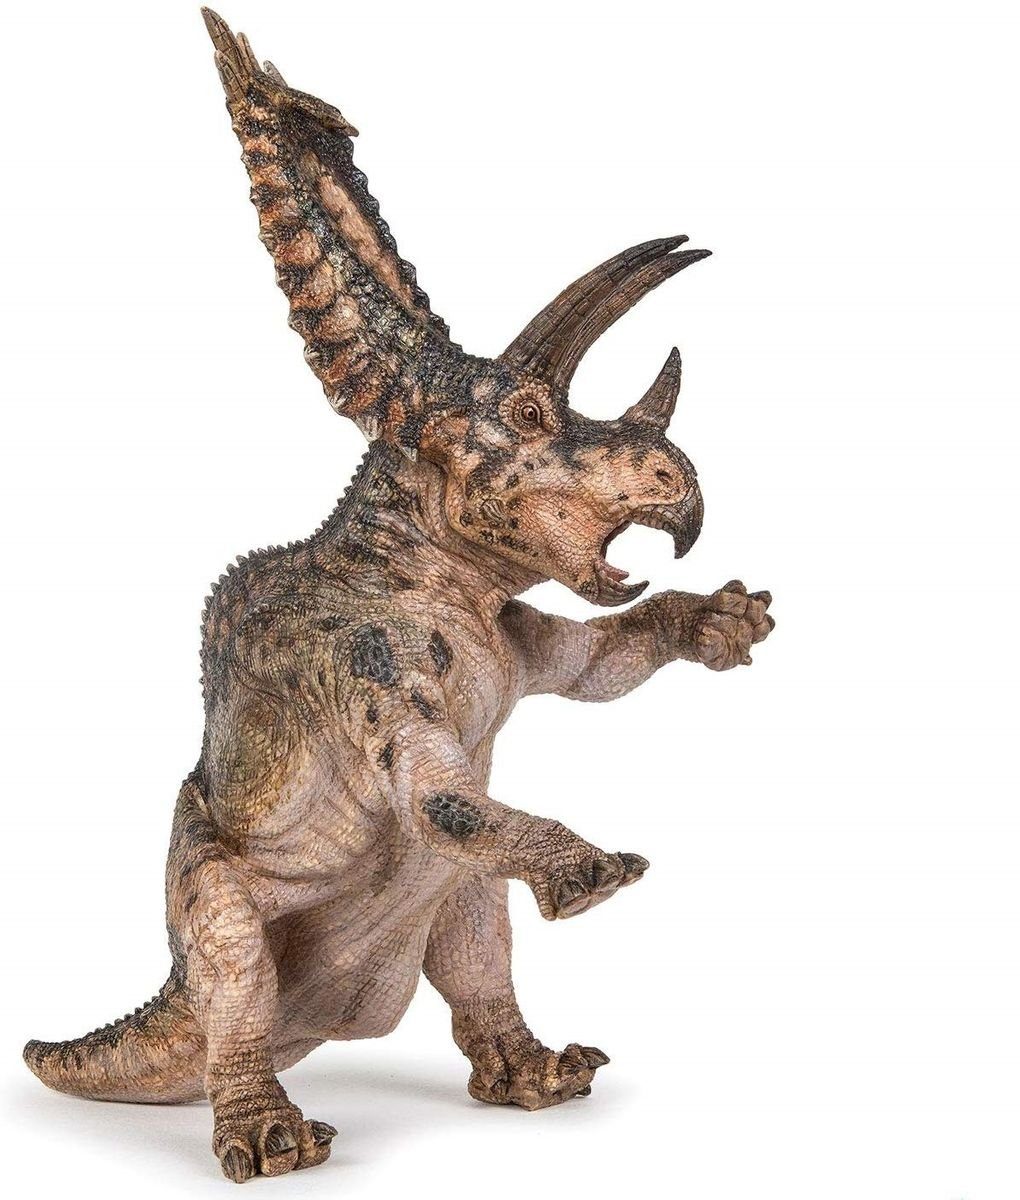 papo Spielfigur Pentaceratops Dinosaurier - 18 cm hoch